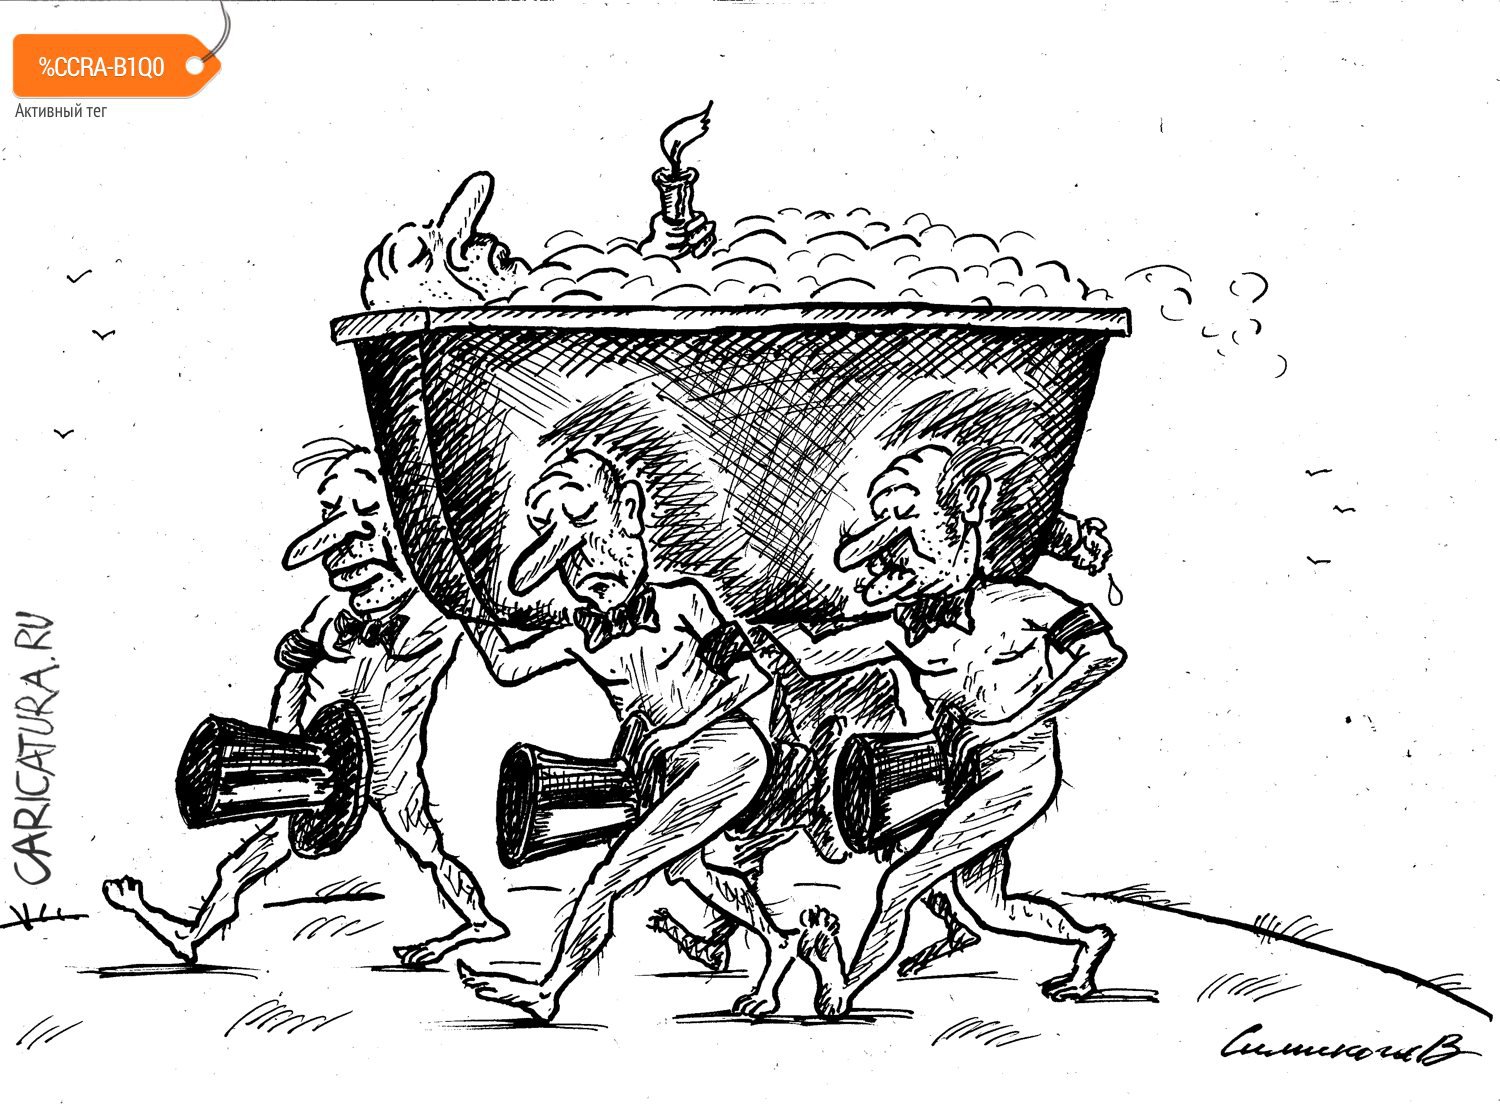 Карикатура "Жмур", Vadim Siminoga